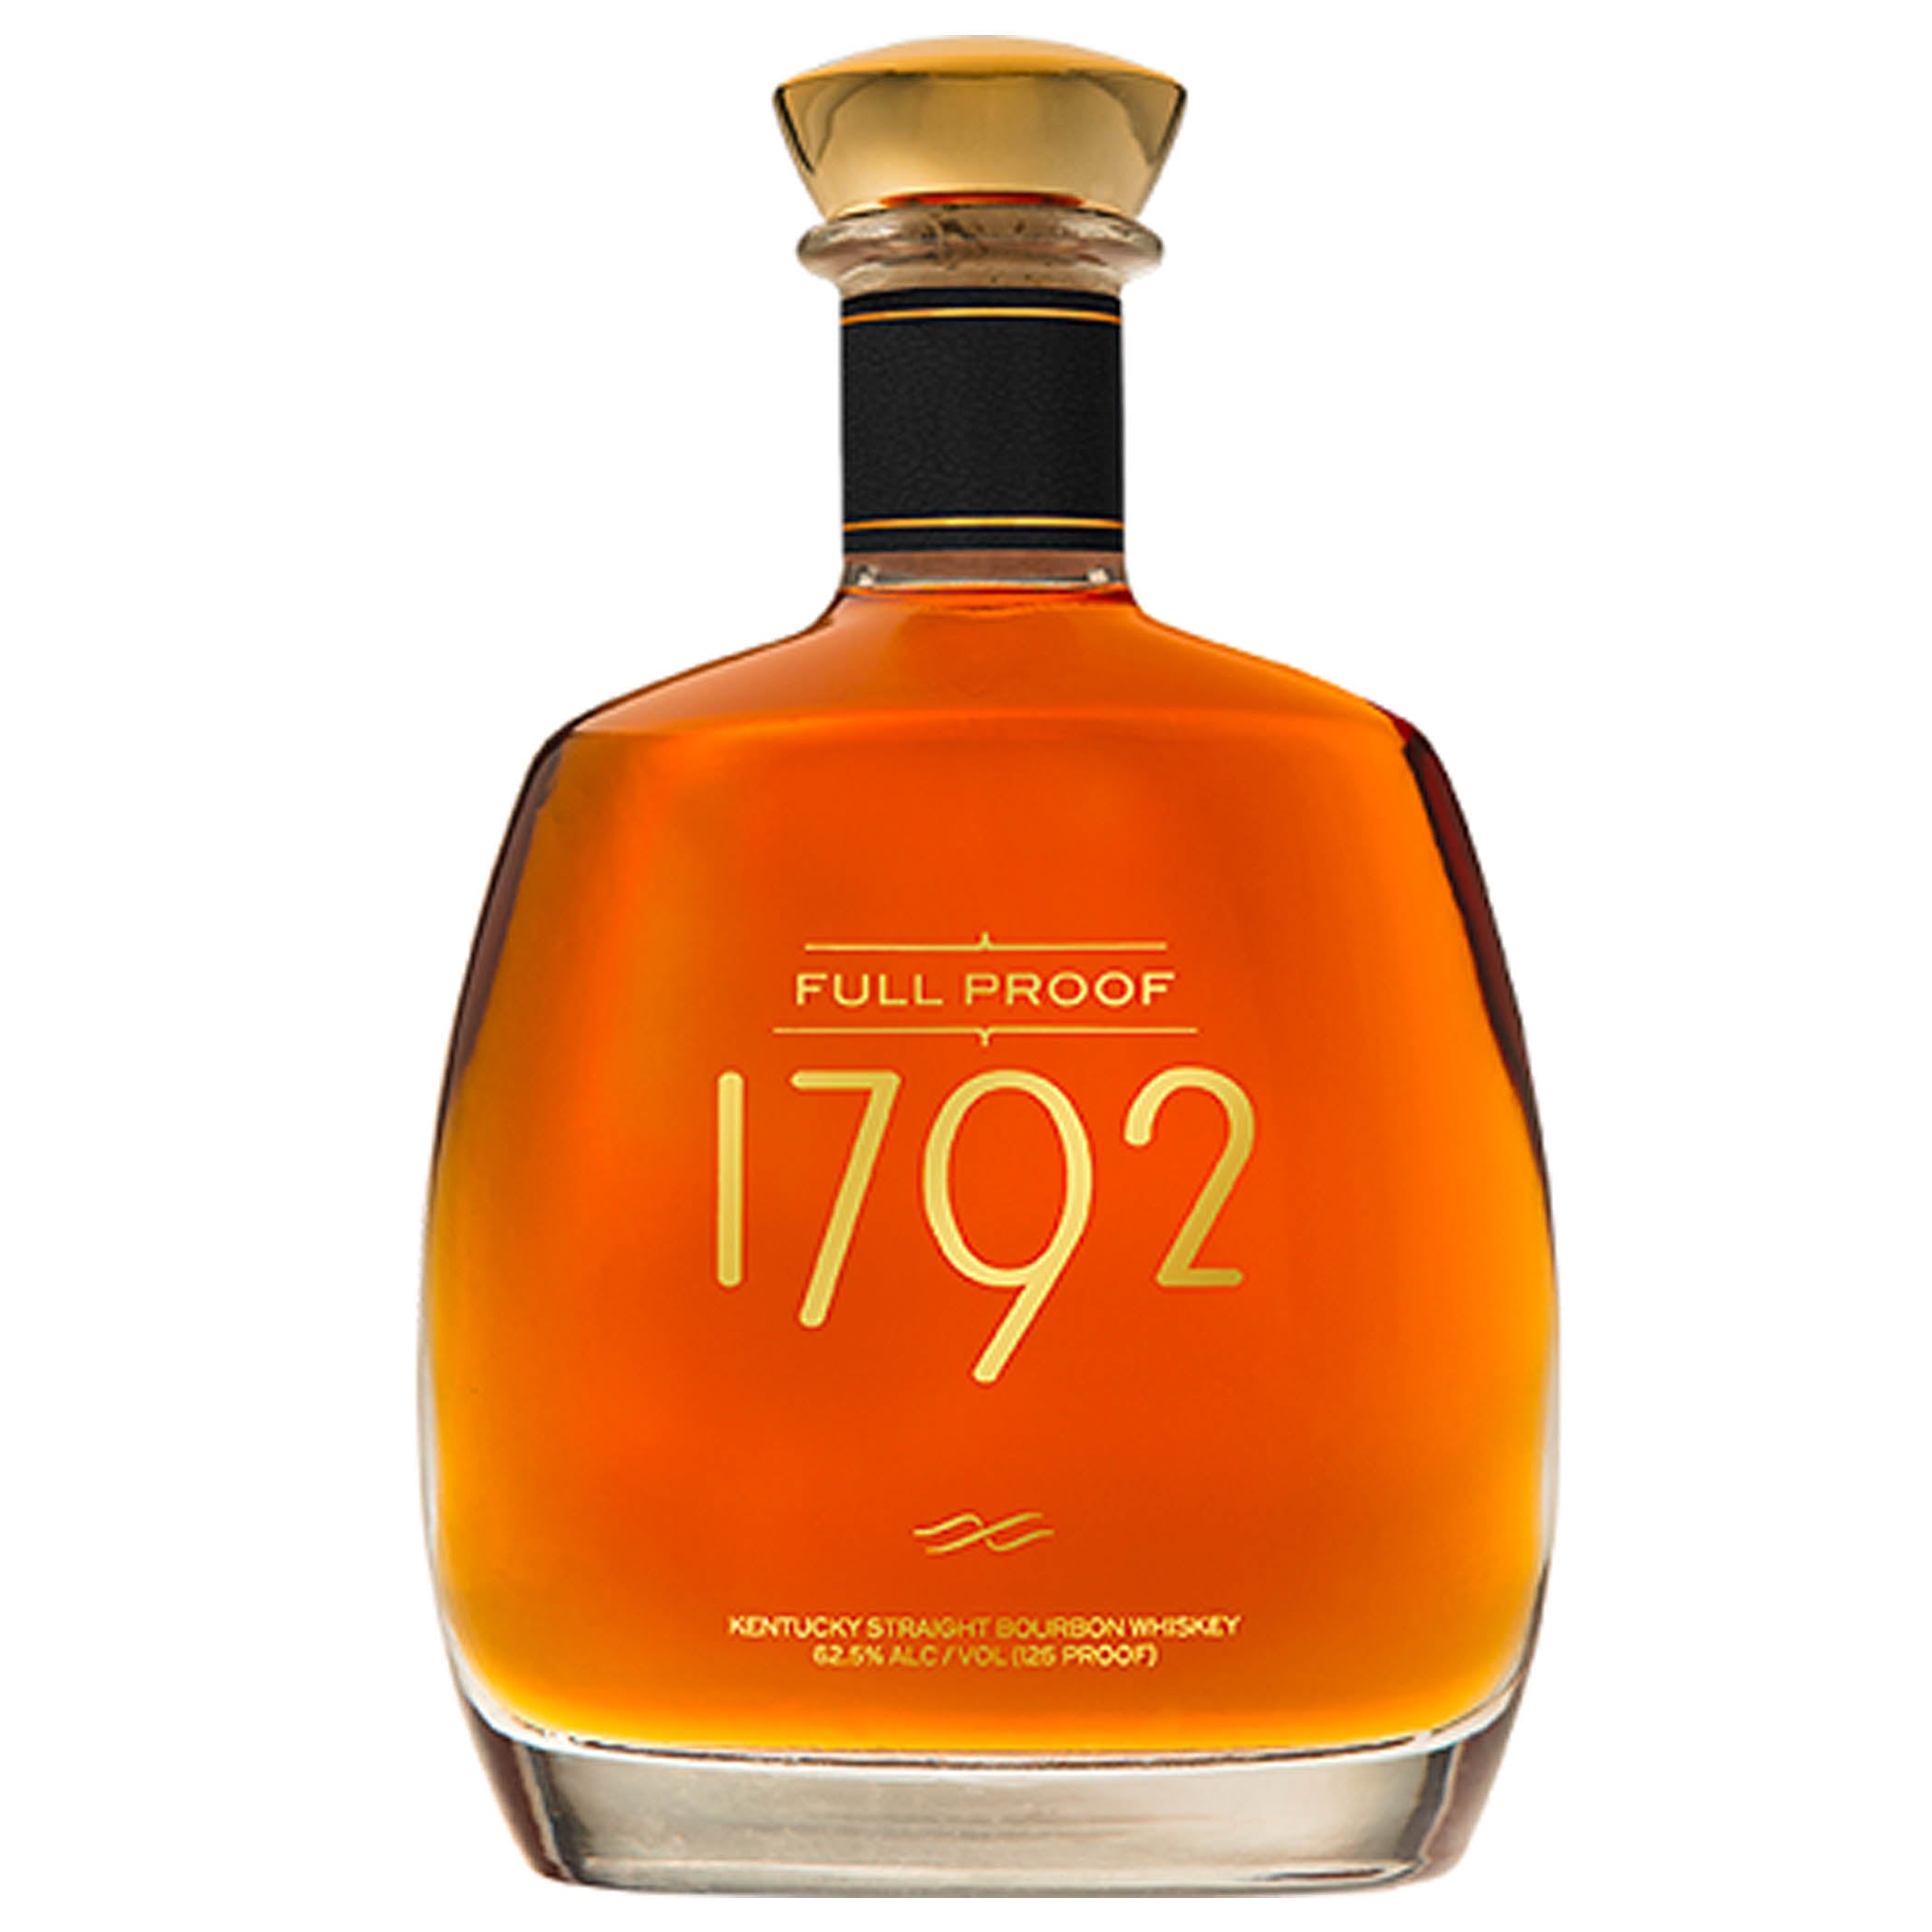 1792 Full Proof Bourbon Whiskey